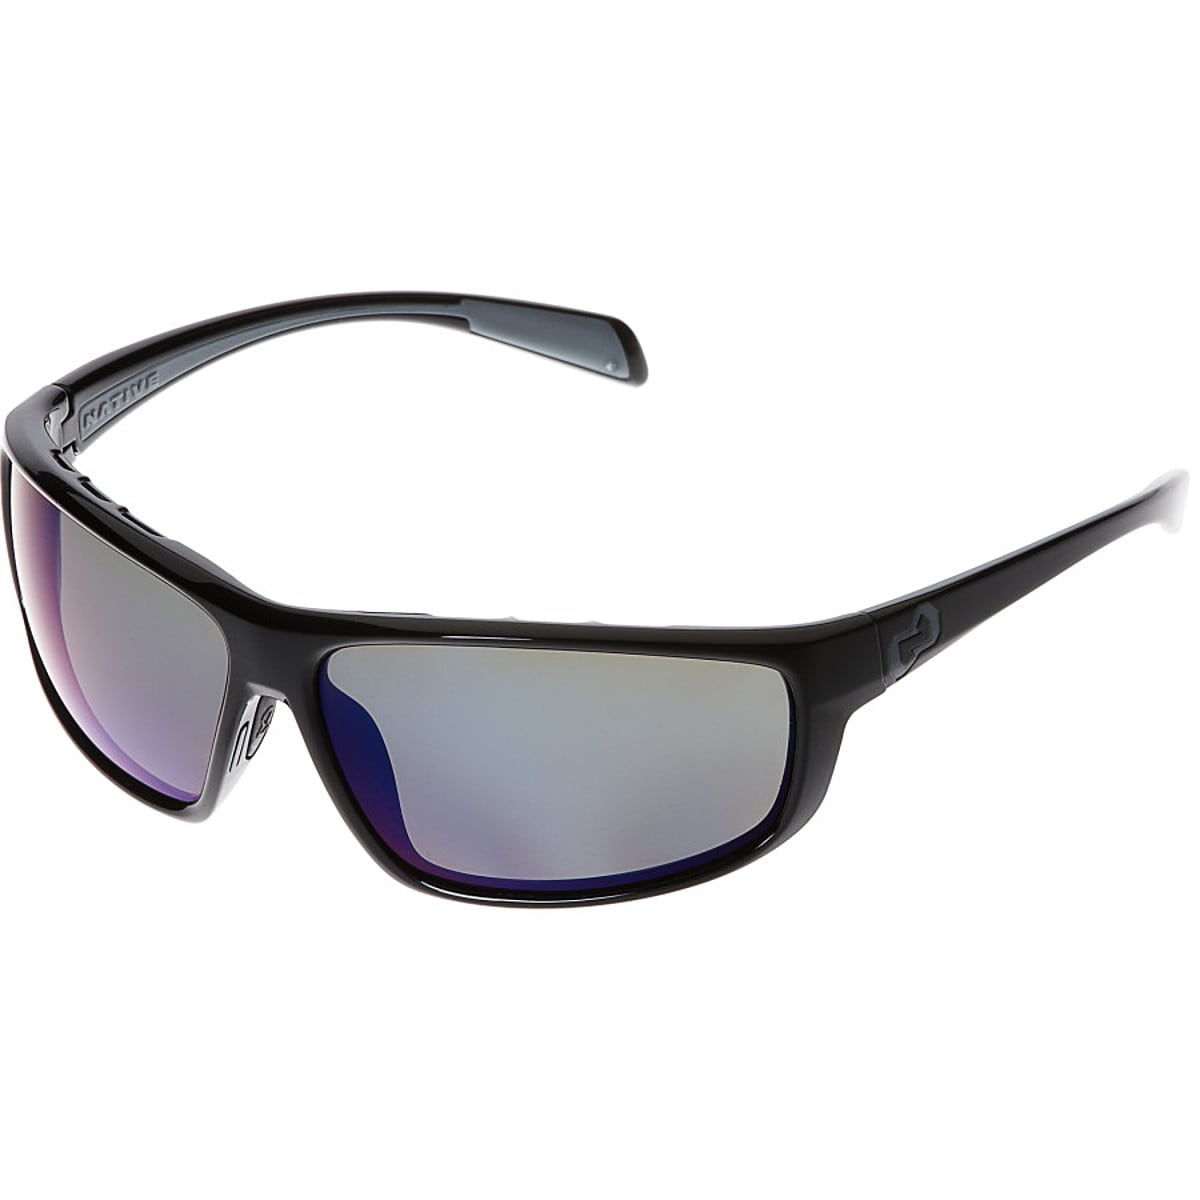 Native Eyewear Bigfork Polarized Sunglasses Iron/Blue Reflex, One Size ...